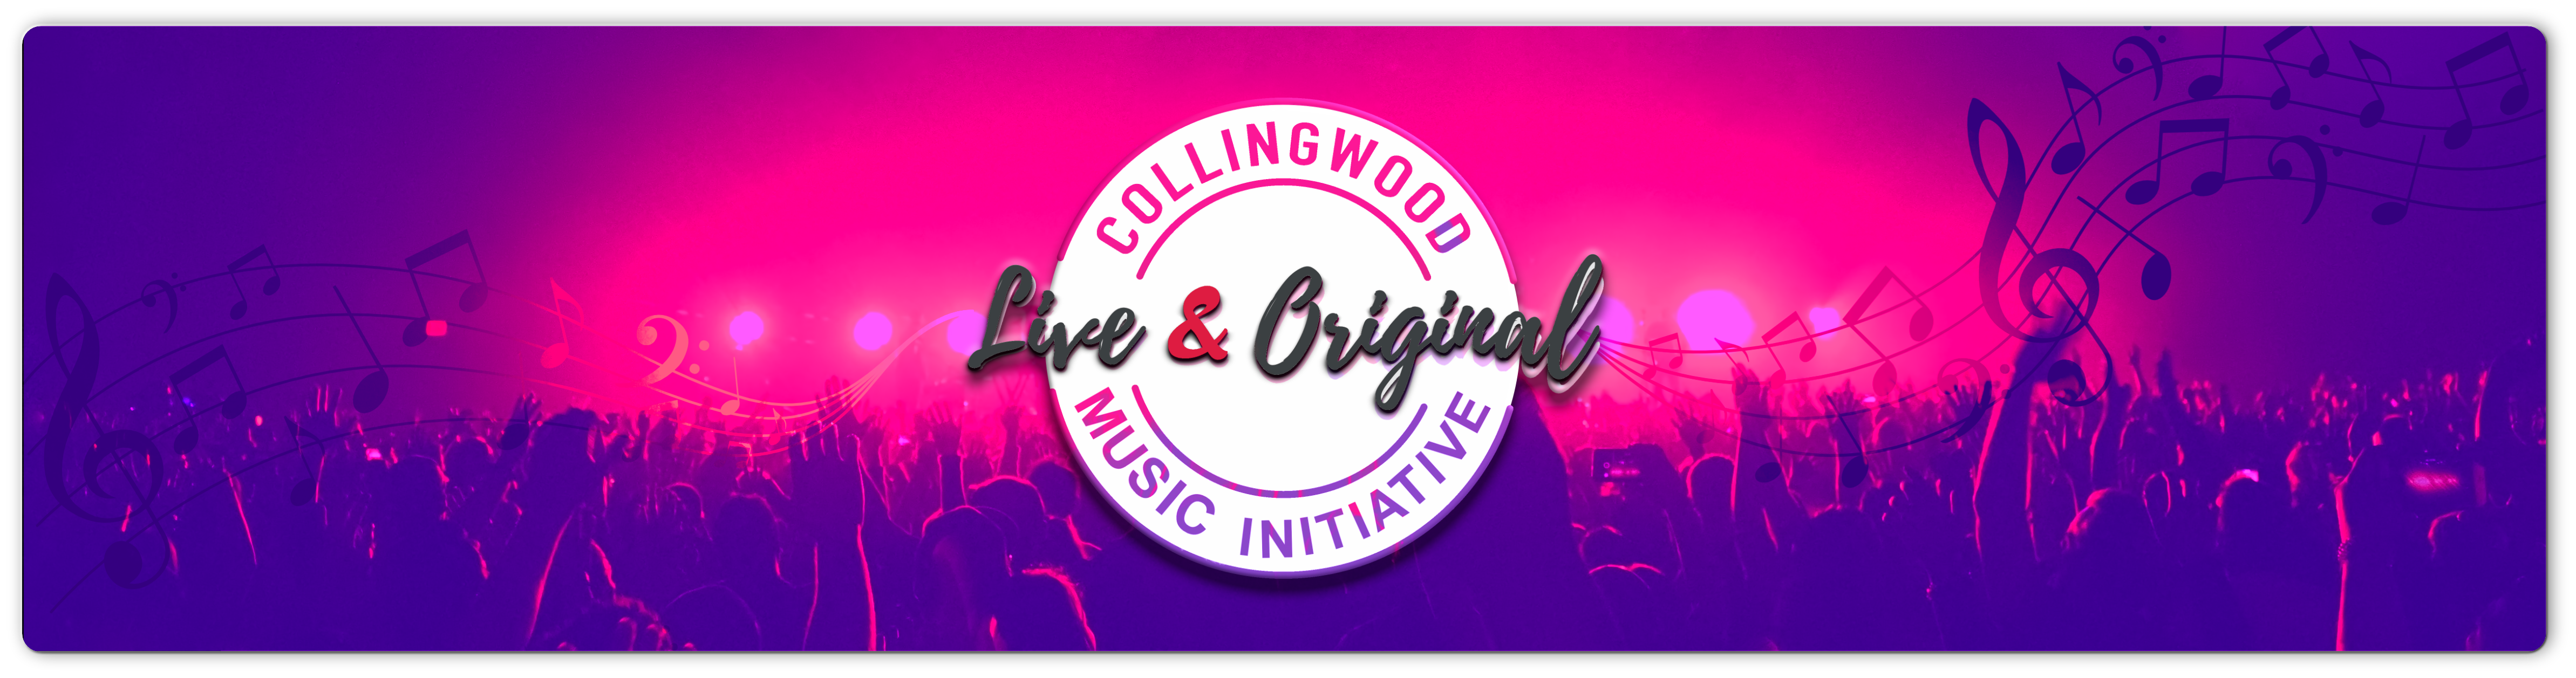 Live & Original Music Initiative